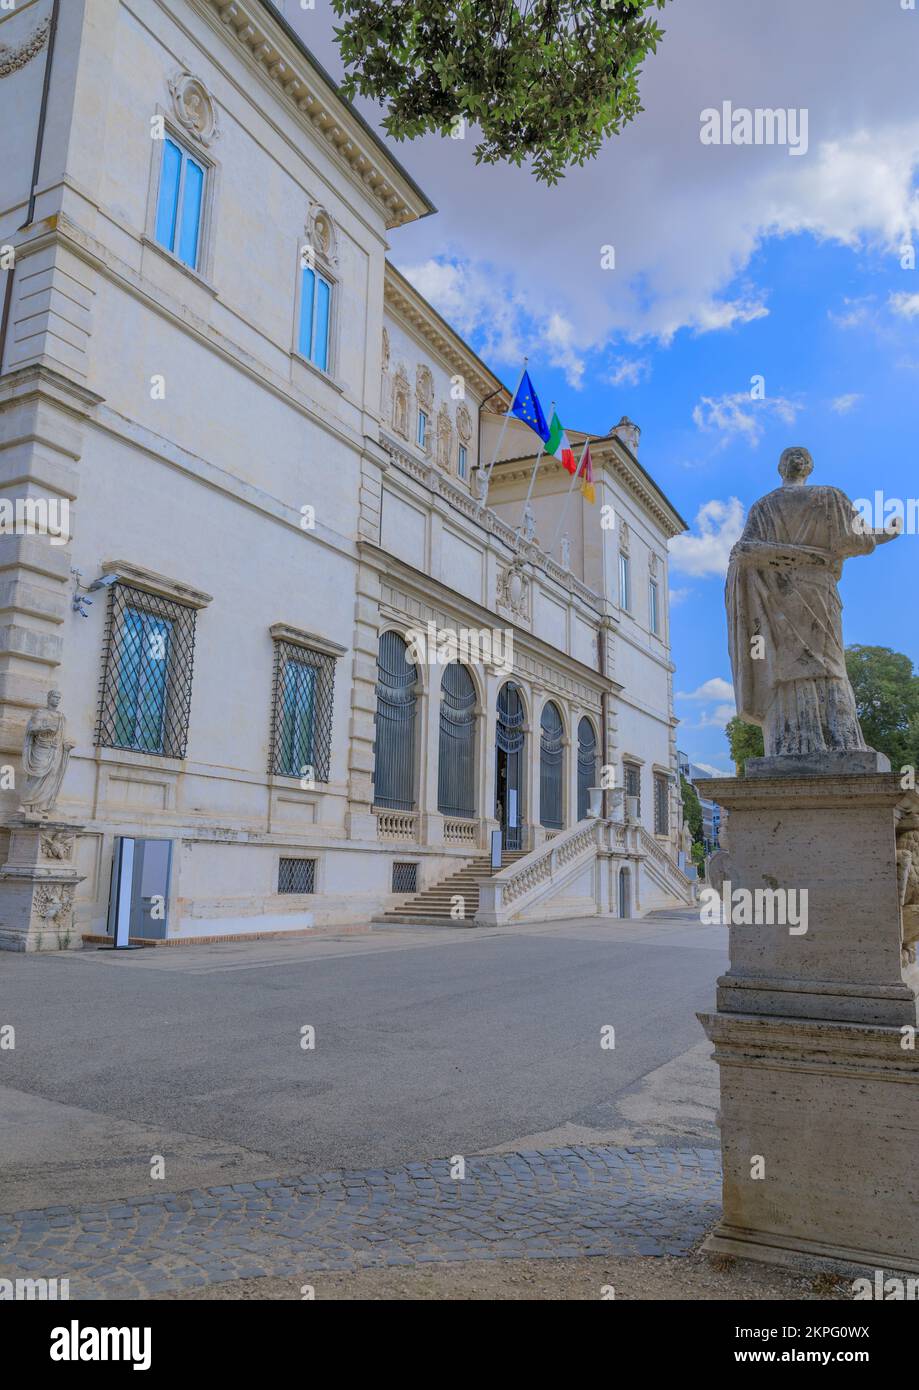 Vue sur la façade de la Galleria Borghese à l'intérieur du parc public de la Villa Borghese à Rome, Italie. Banque D'Images